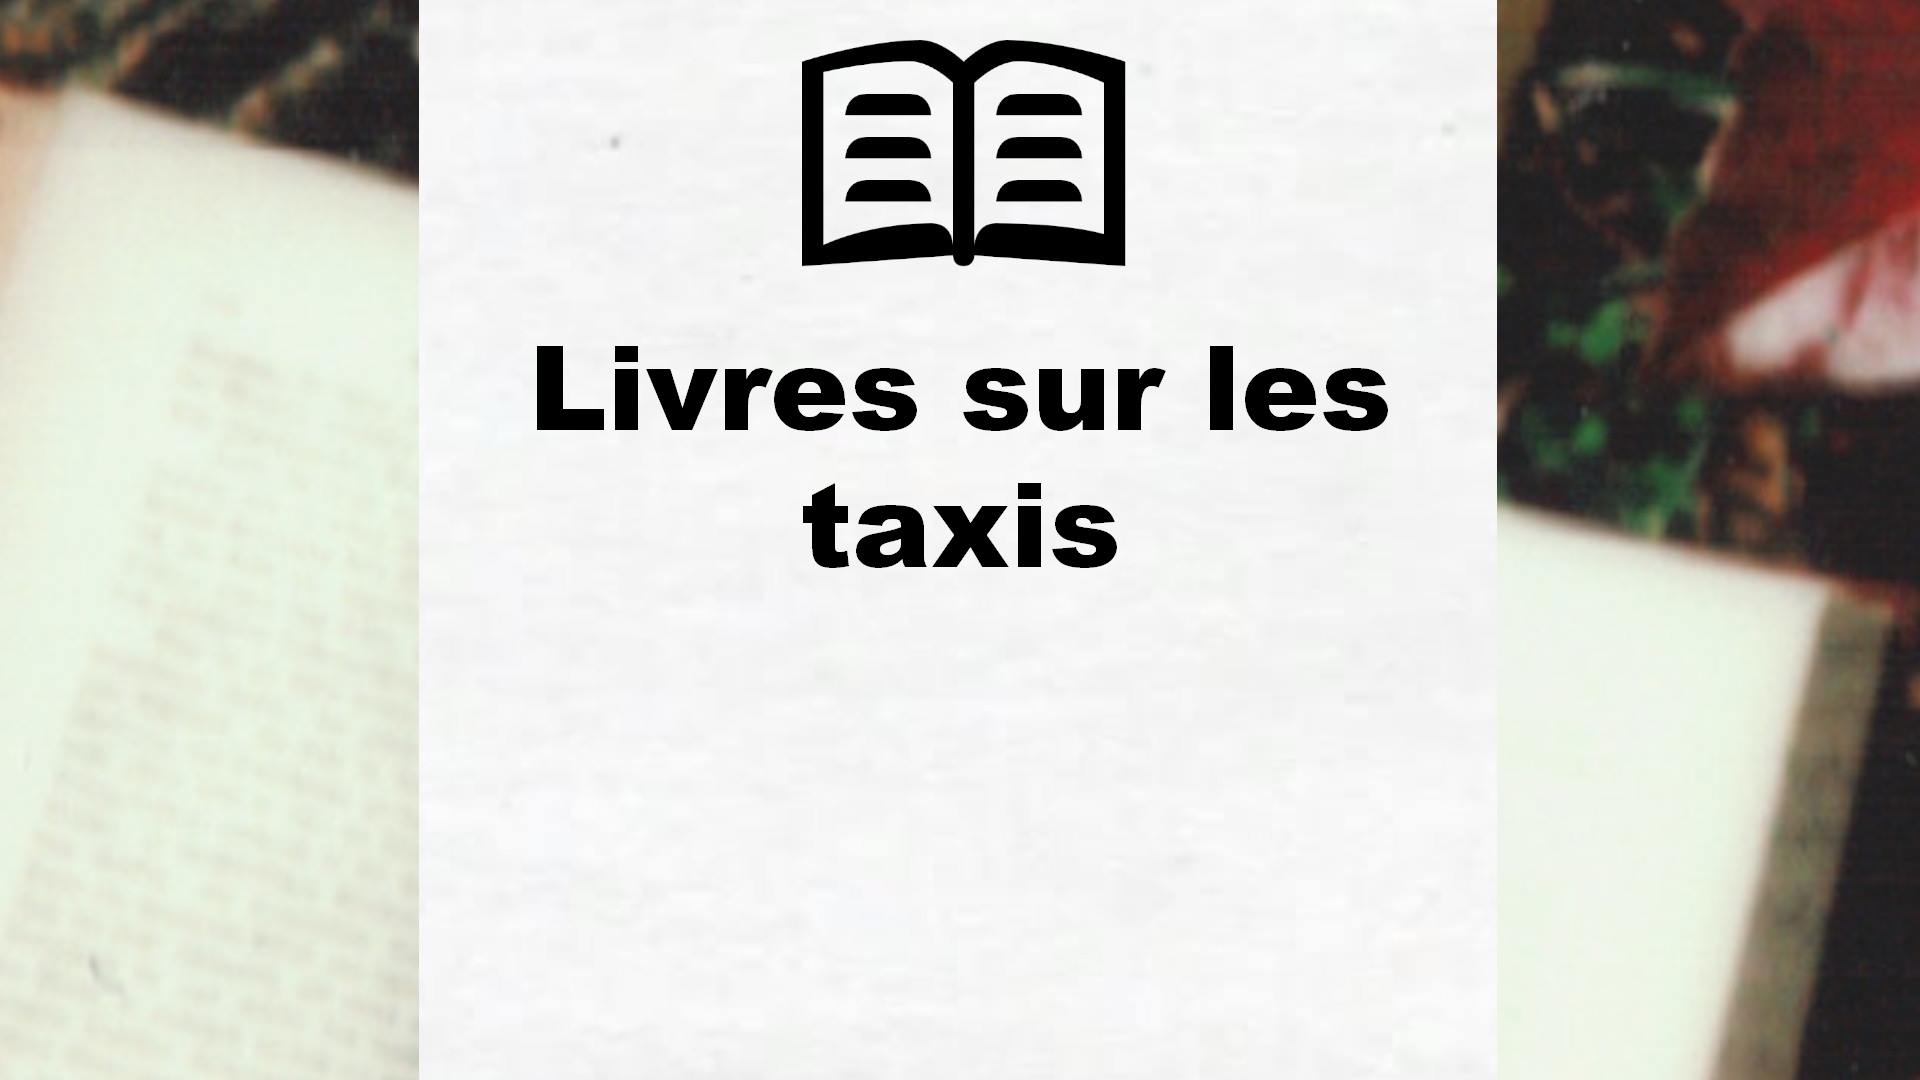 Livres sur les taxis